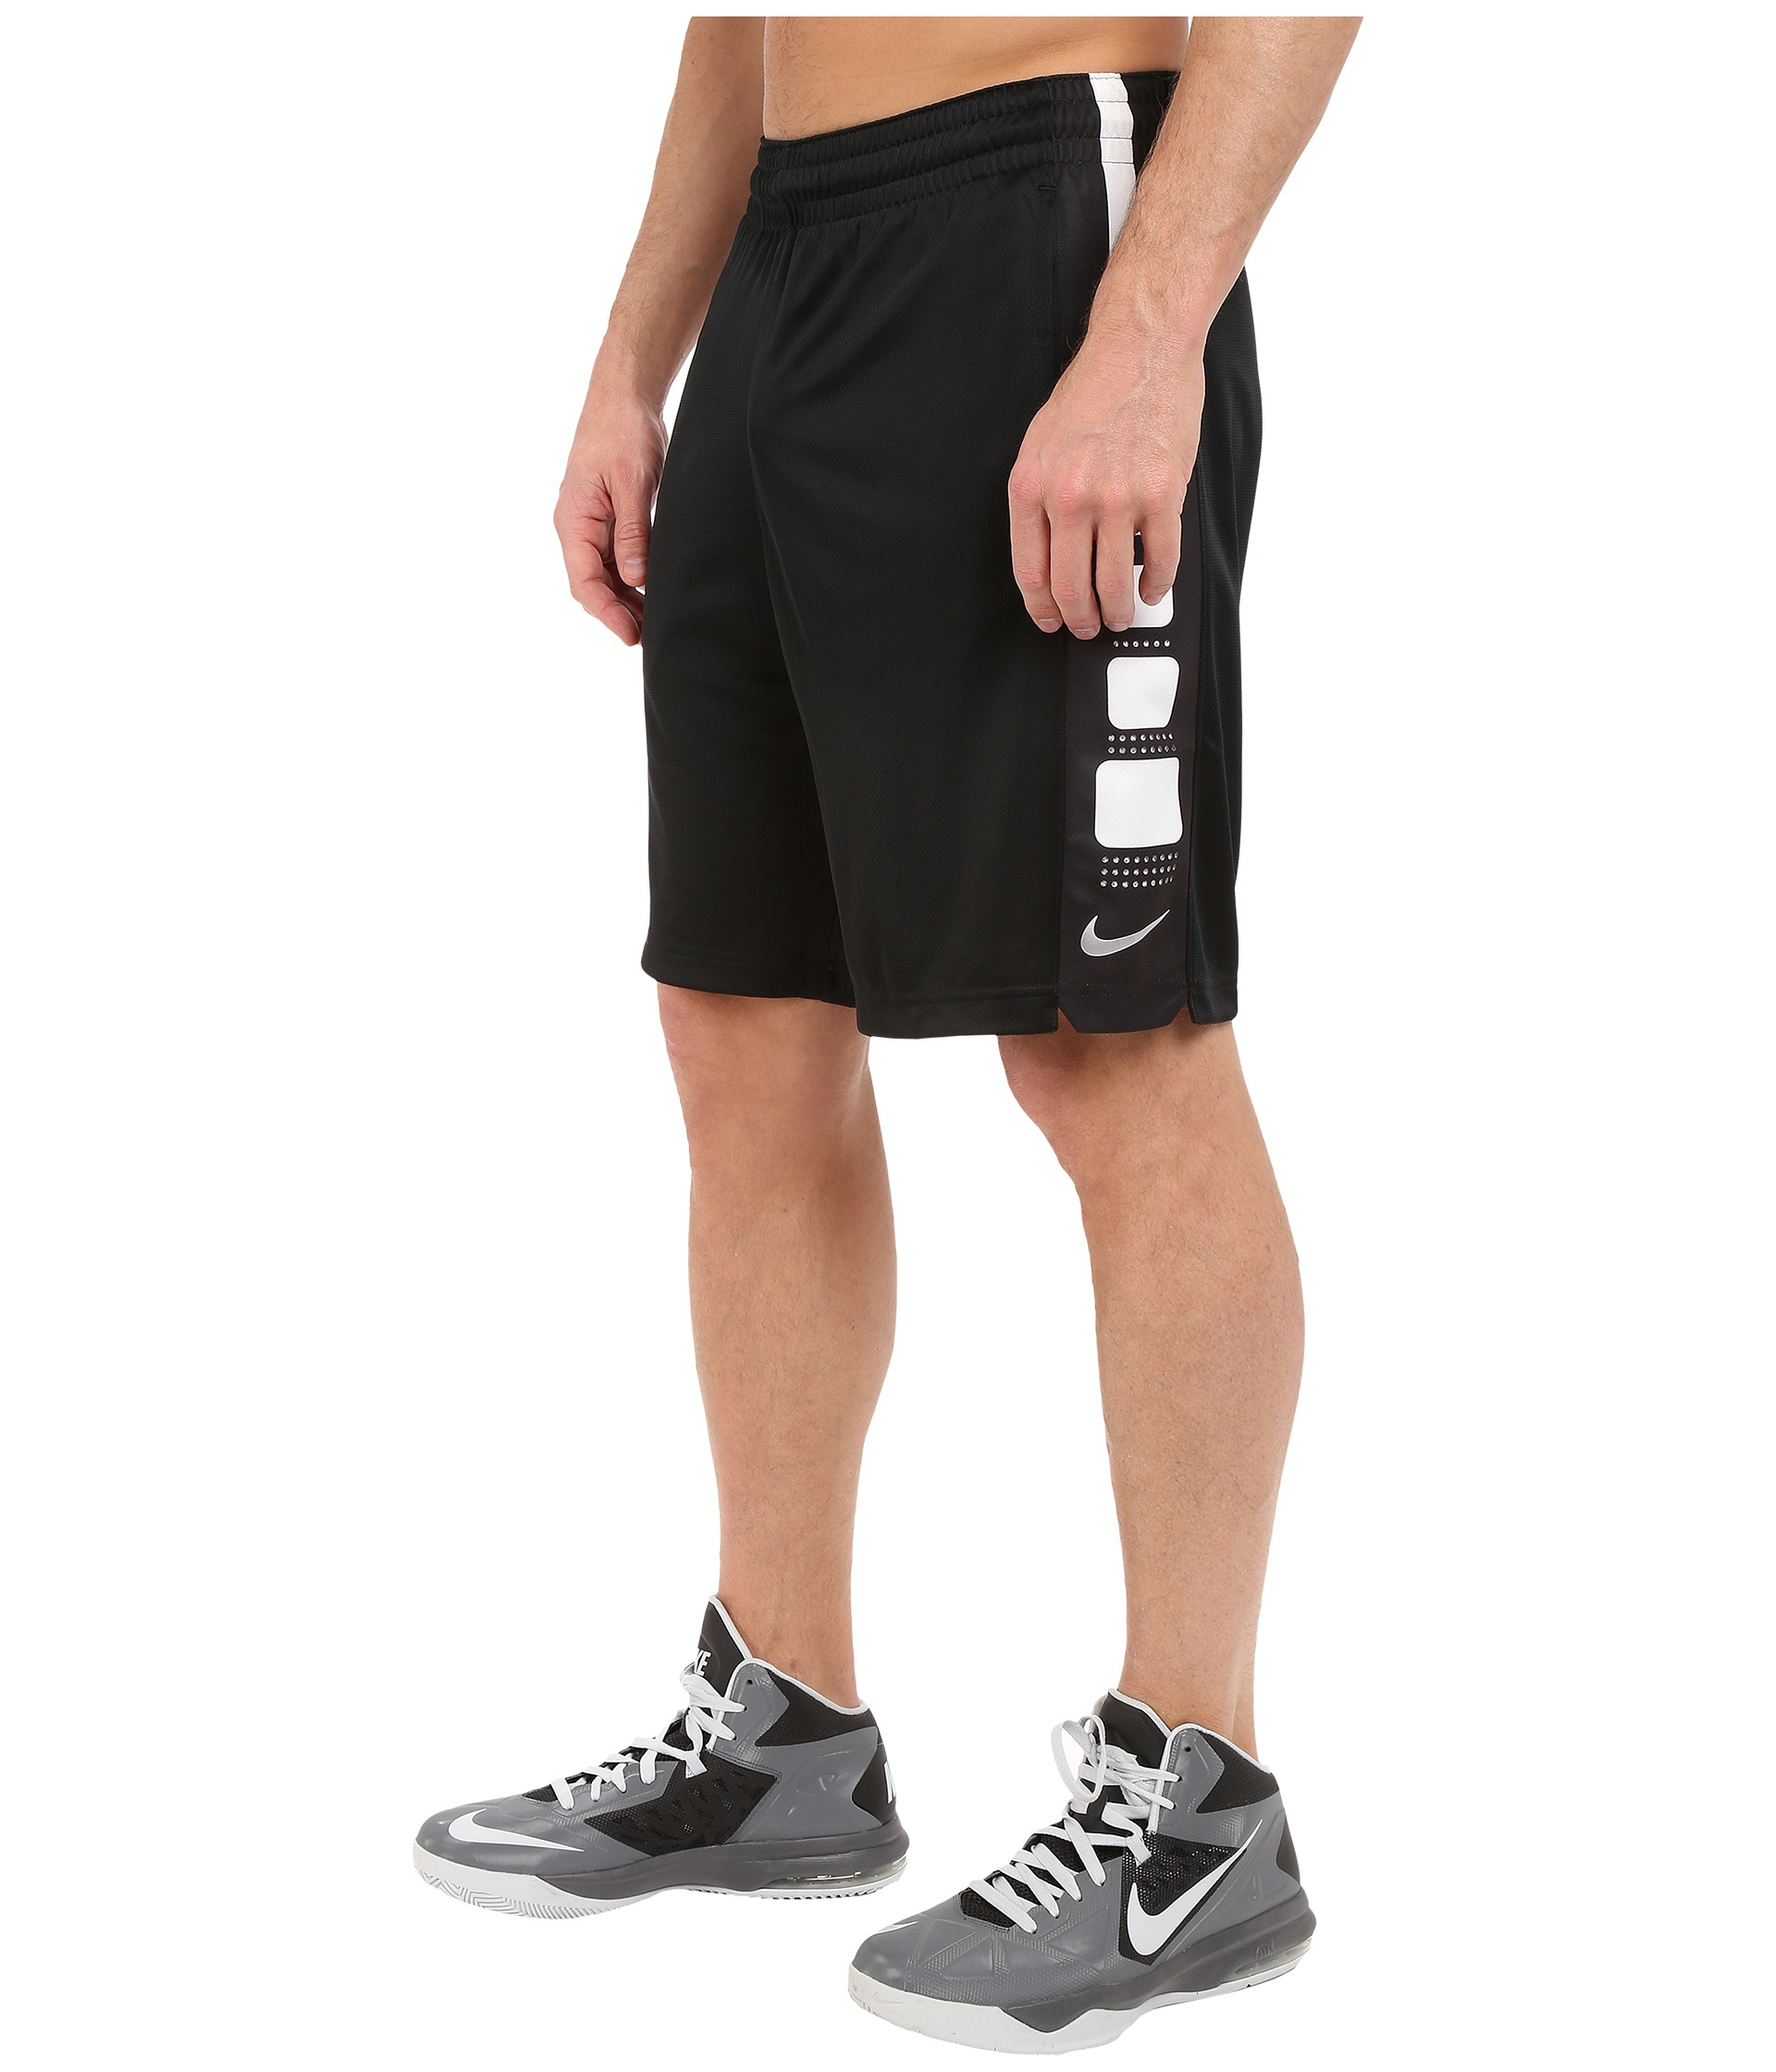 Lyst - Nike Elite Stripe Short in Black for Men